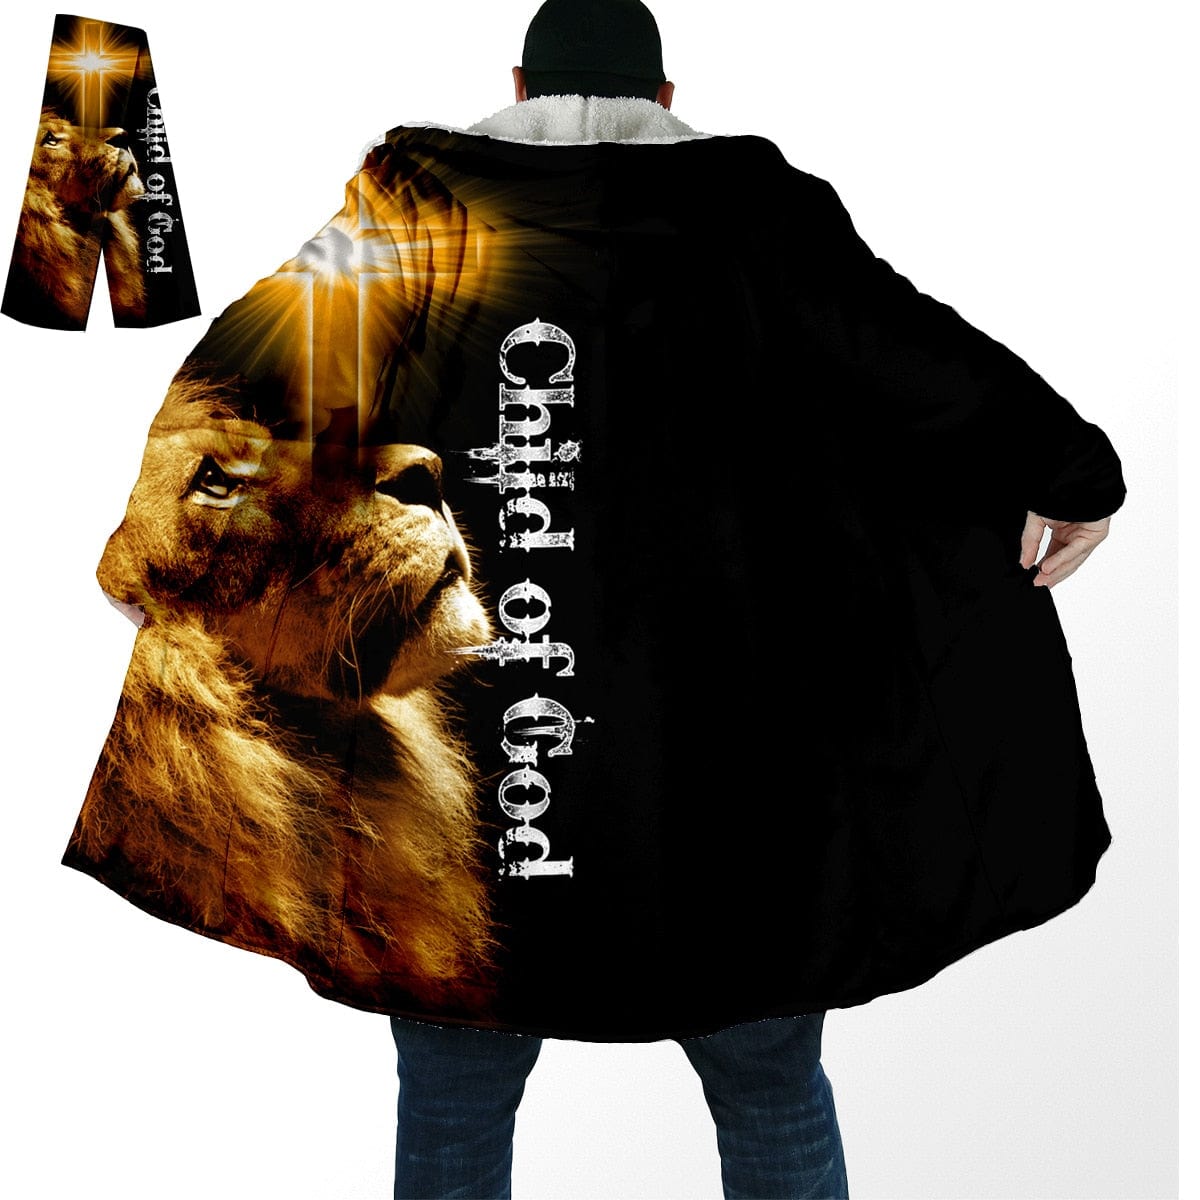 HomeBound Essentials Child of God / S StealthTiger 3D Windproof Hooded Overcoat Fleece